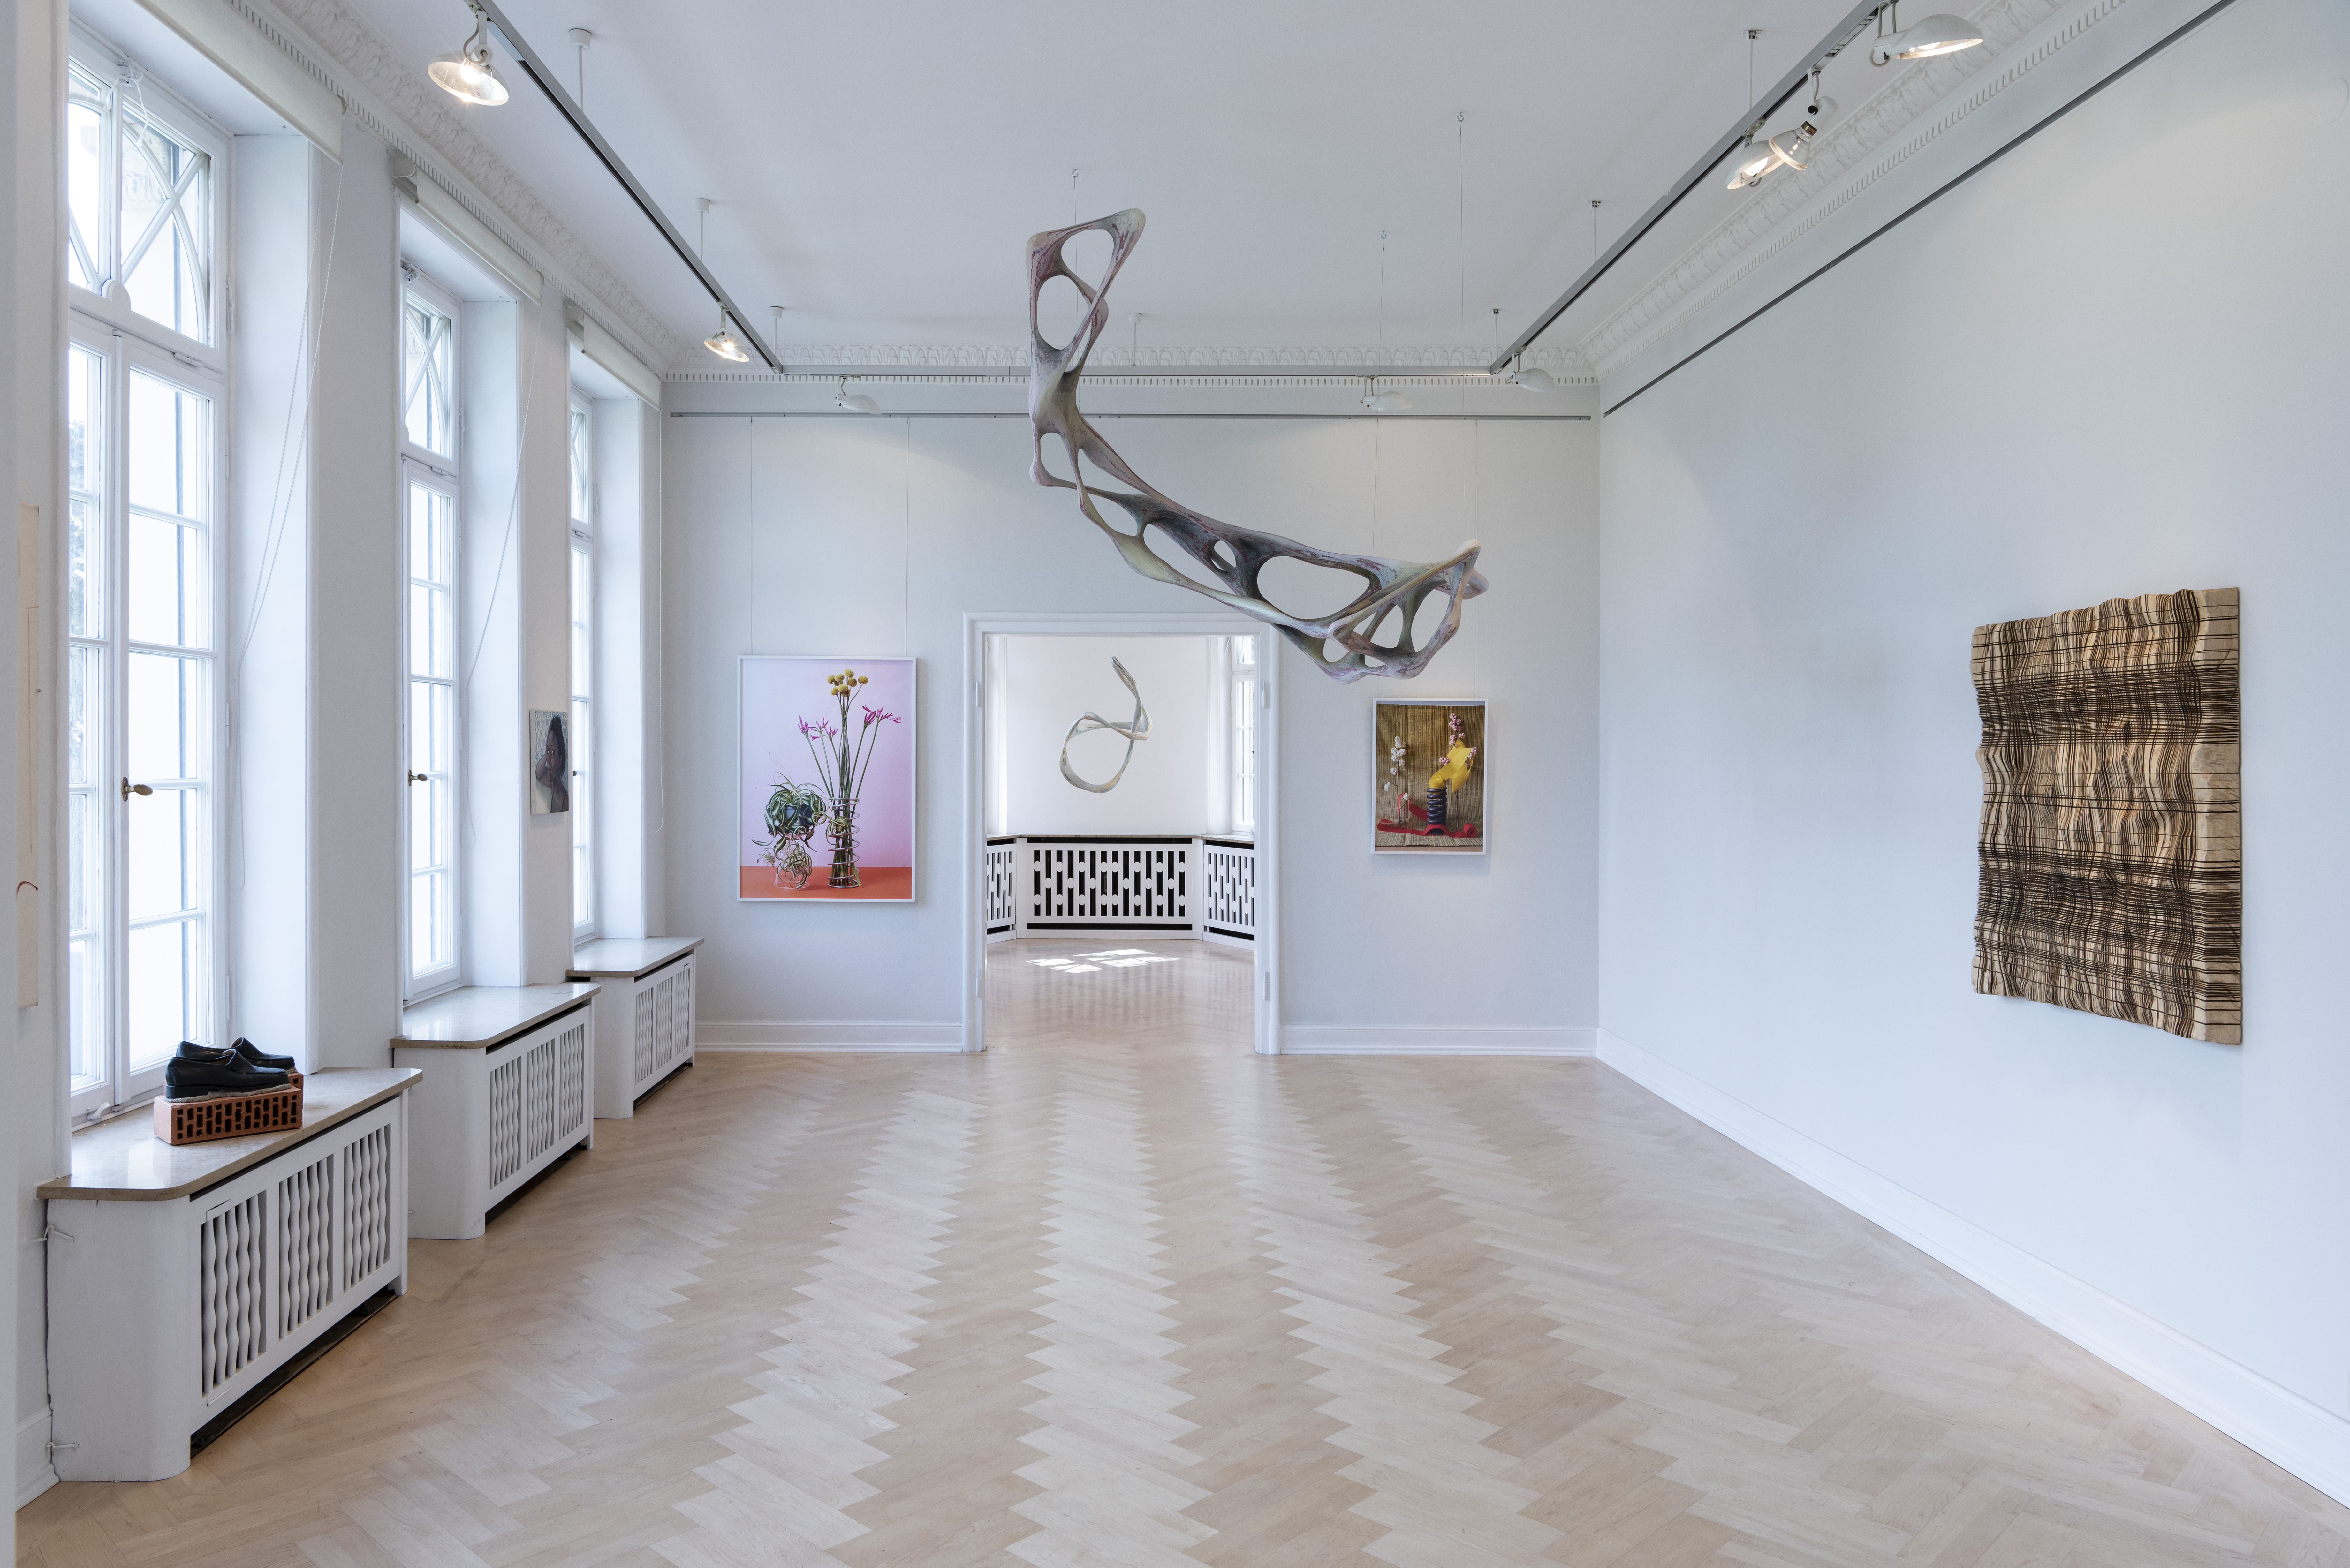 Abbildung: „floating sculptures“ von Wolfgang Flad an der Decke vorne und hinten